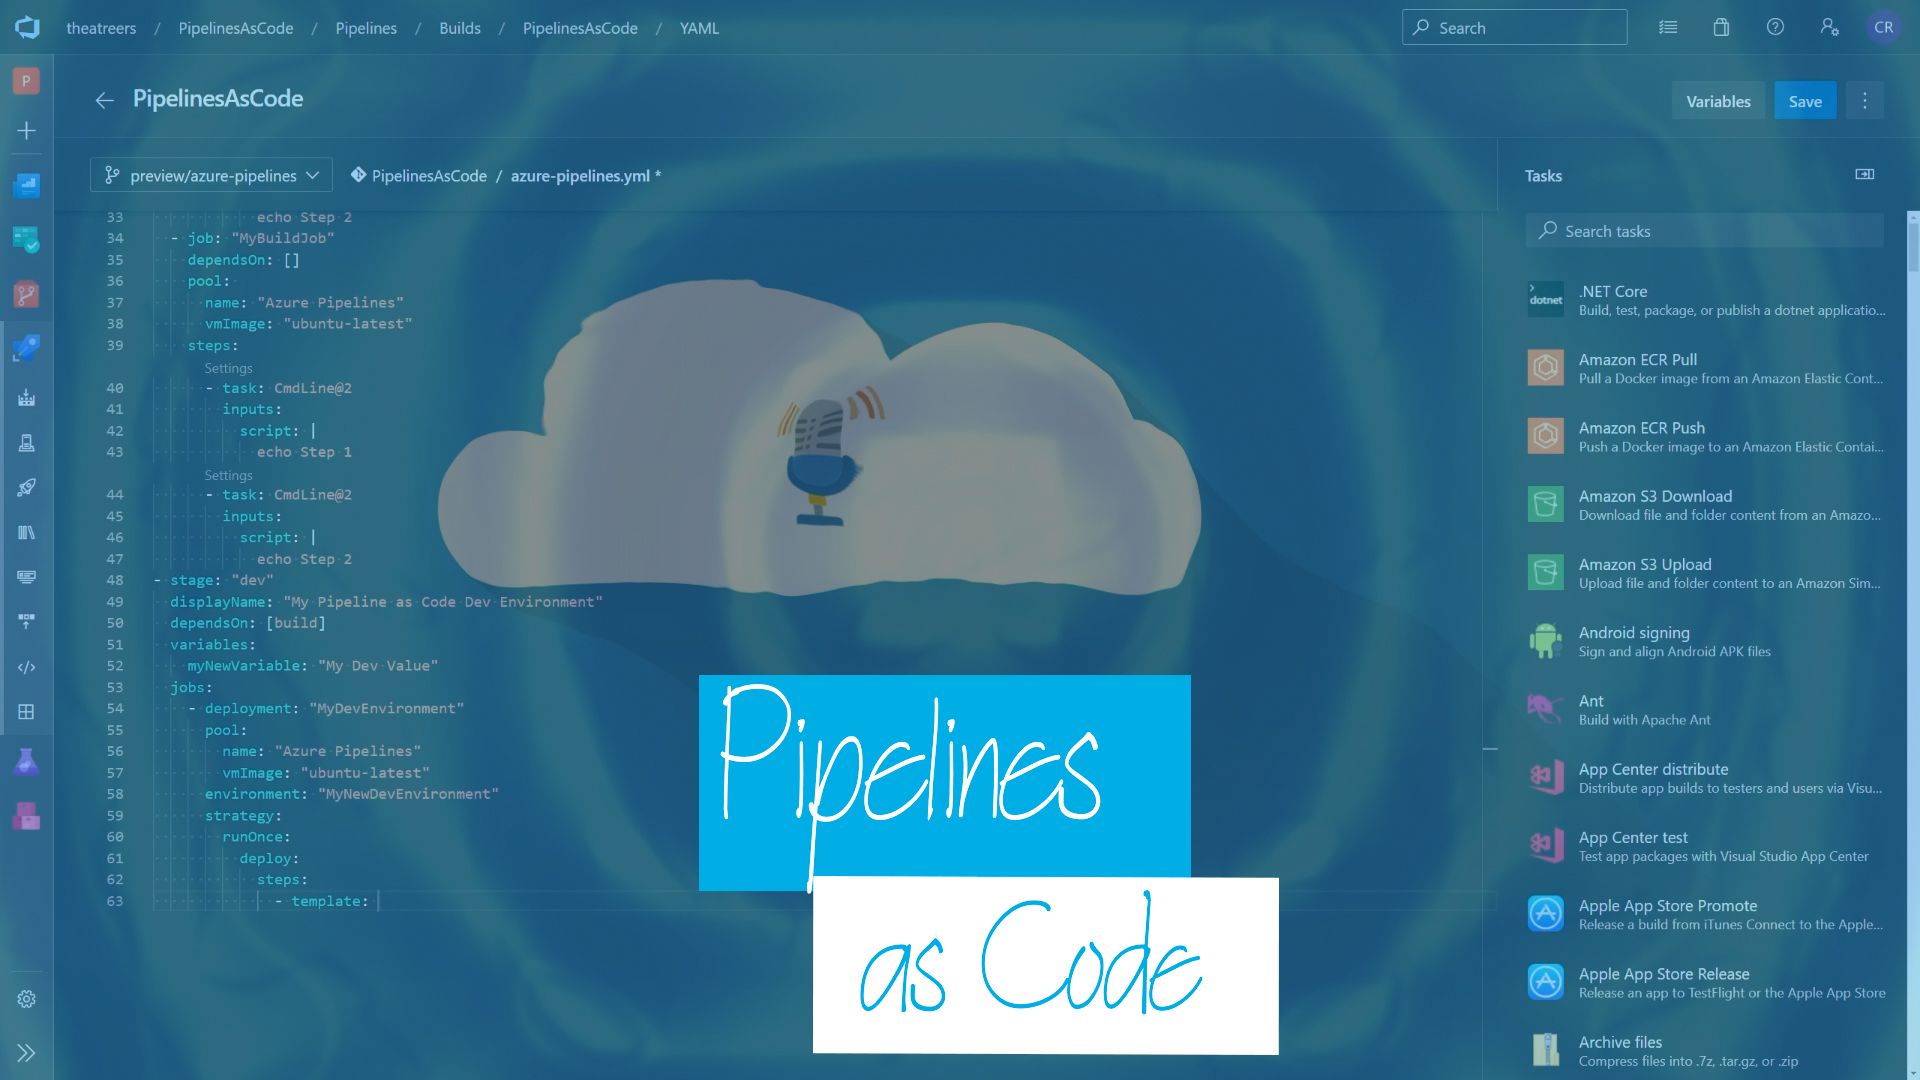 Cloud Drops - Pipelines as Code